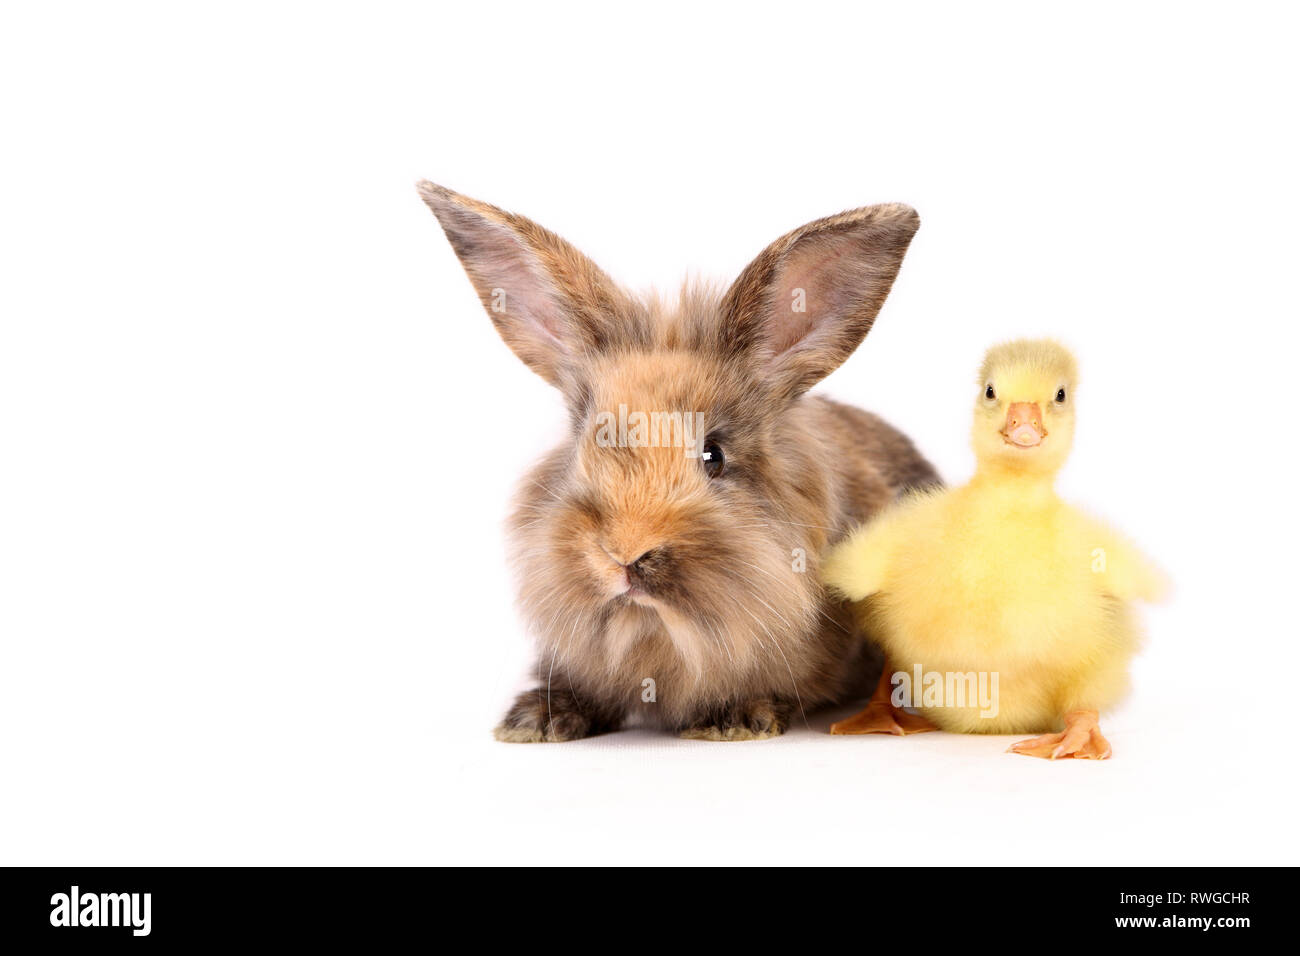 L'oie domestique. Gosling est assis à côté de lapin nain adultes. Studio photo, vu sur un fond blanc. Allemagne Banque D'Images